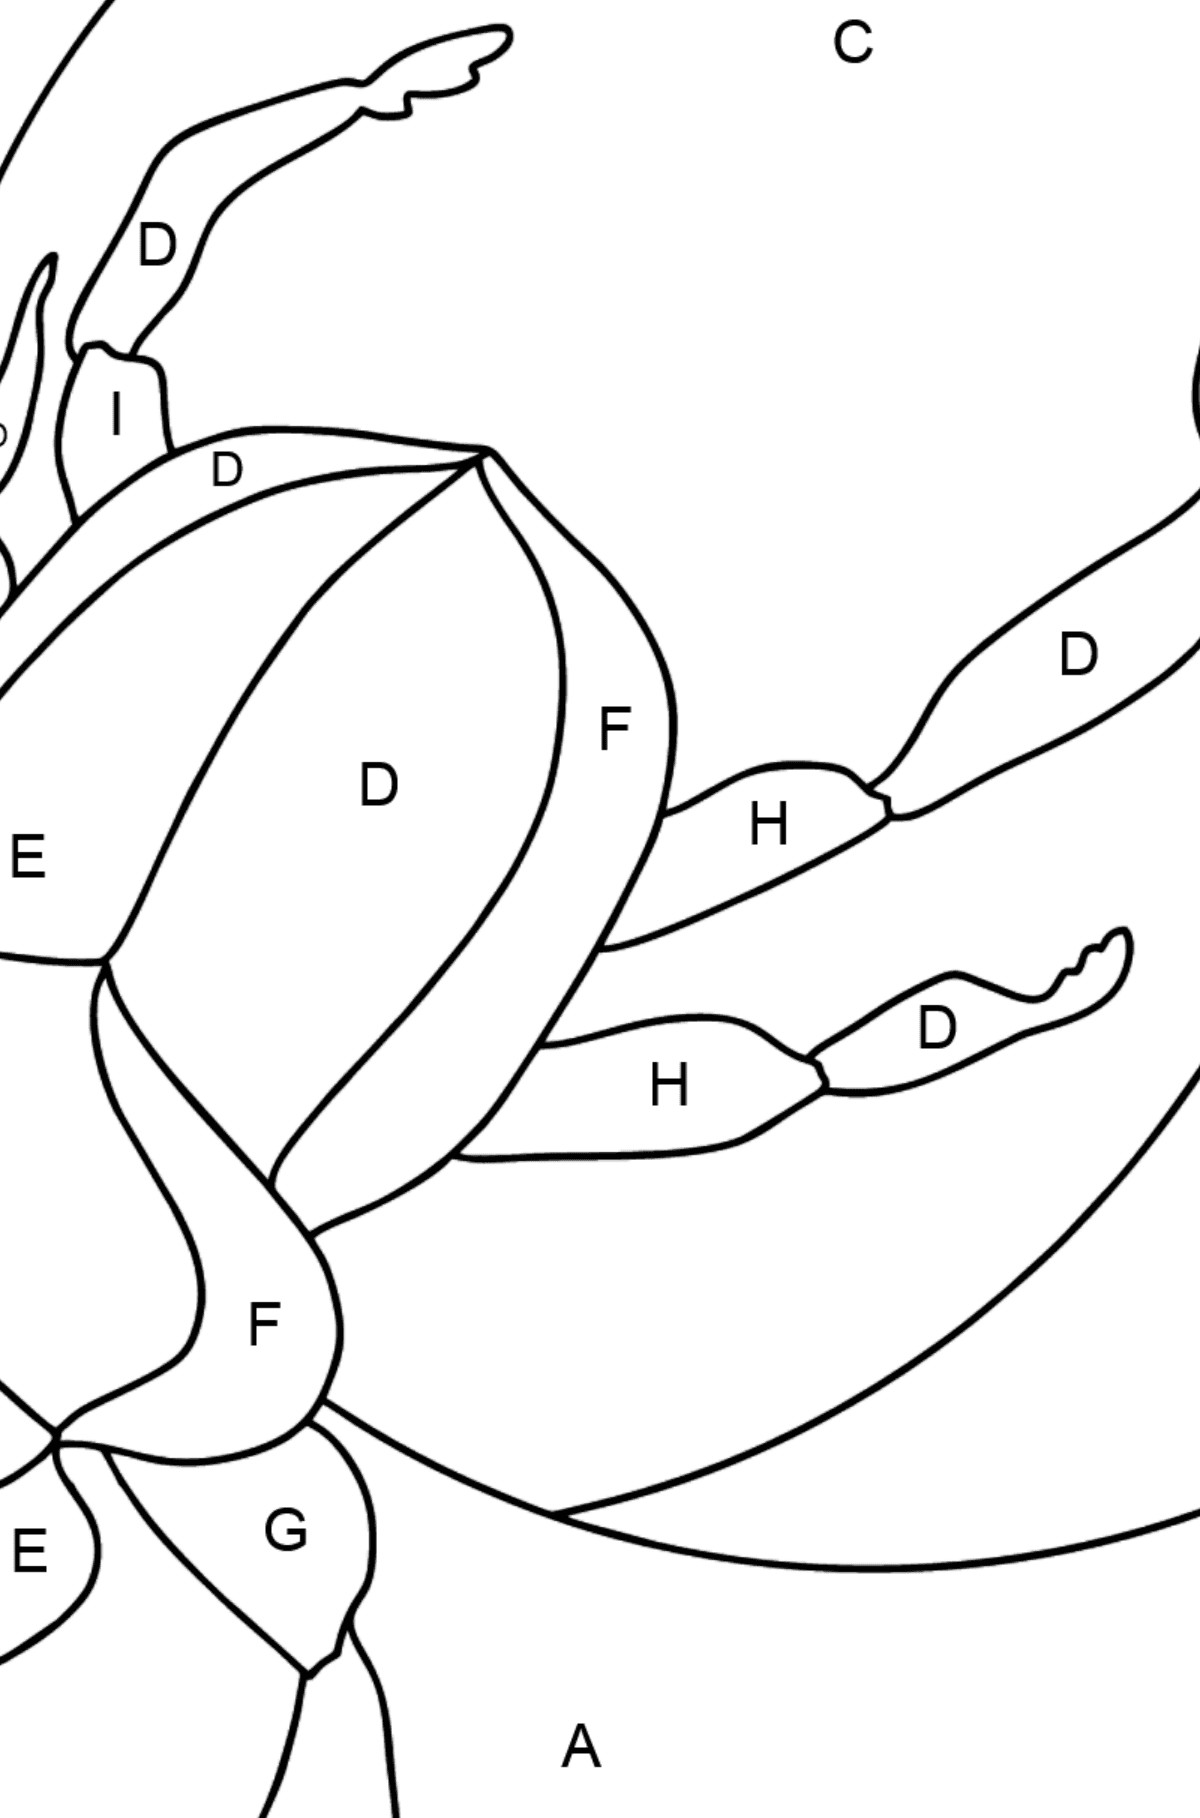 Ausmalbild - Ein Skarabäus-Käfer oder ein Symbol der Erneuerung - Ausmalen nach Buchstaben für Kinder